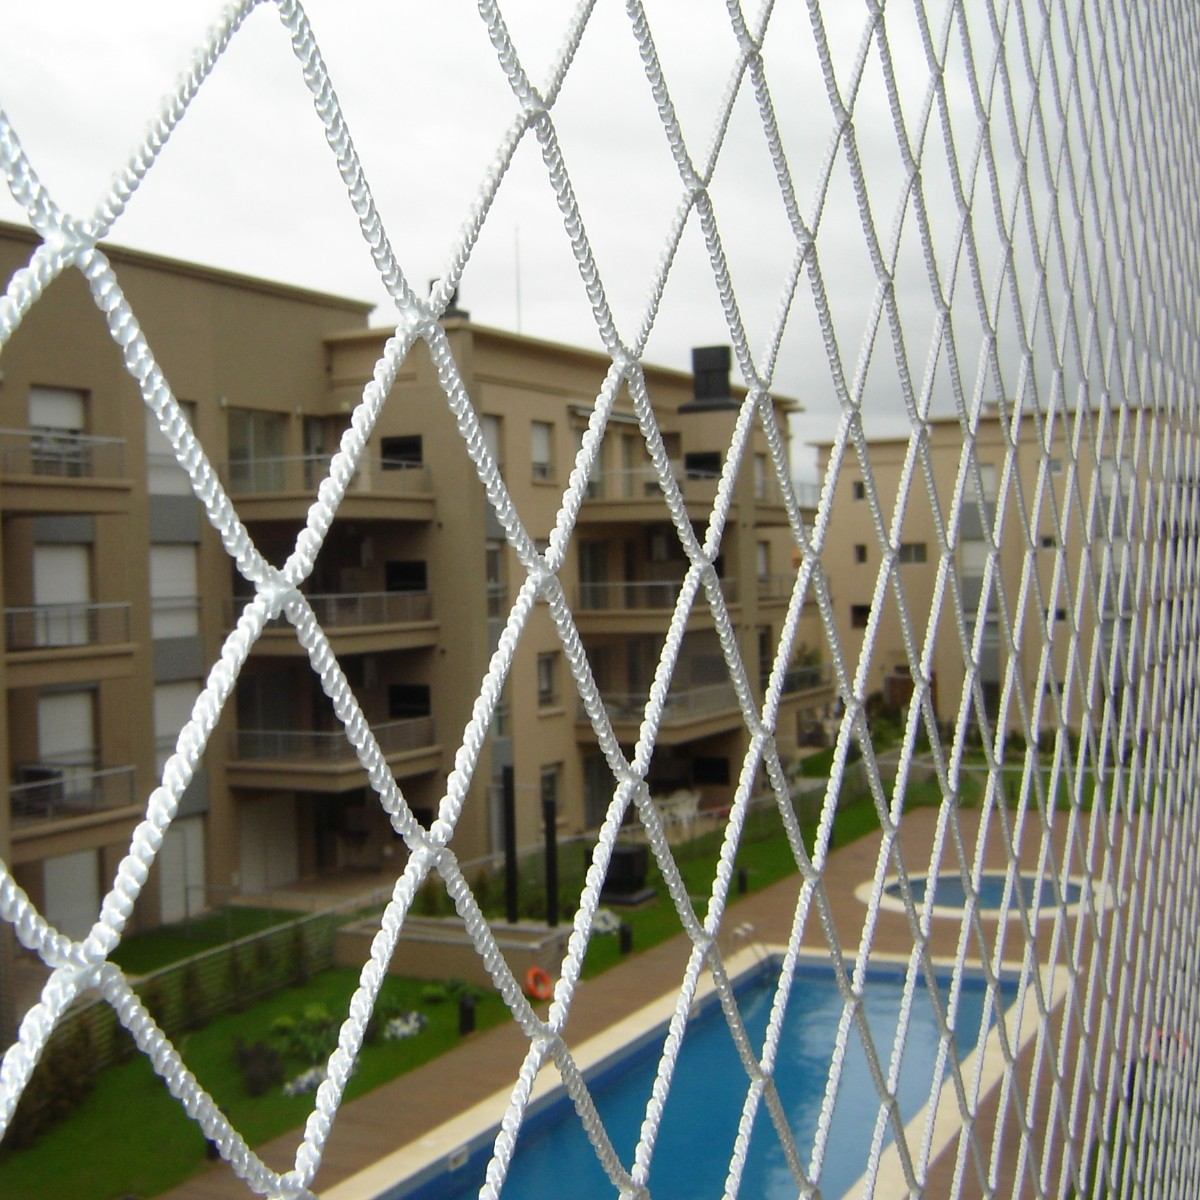 Cómo proteger a los niños con redes para balcones?